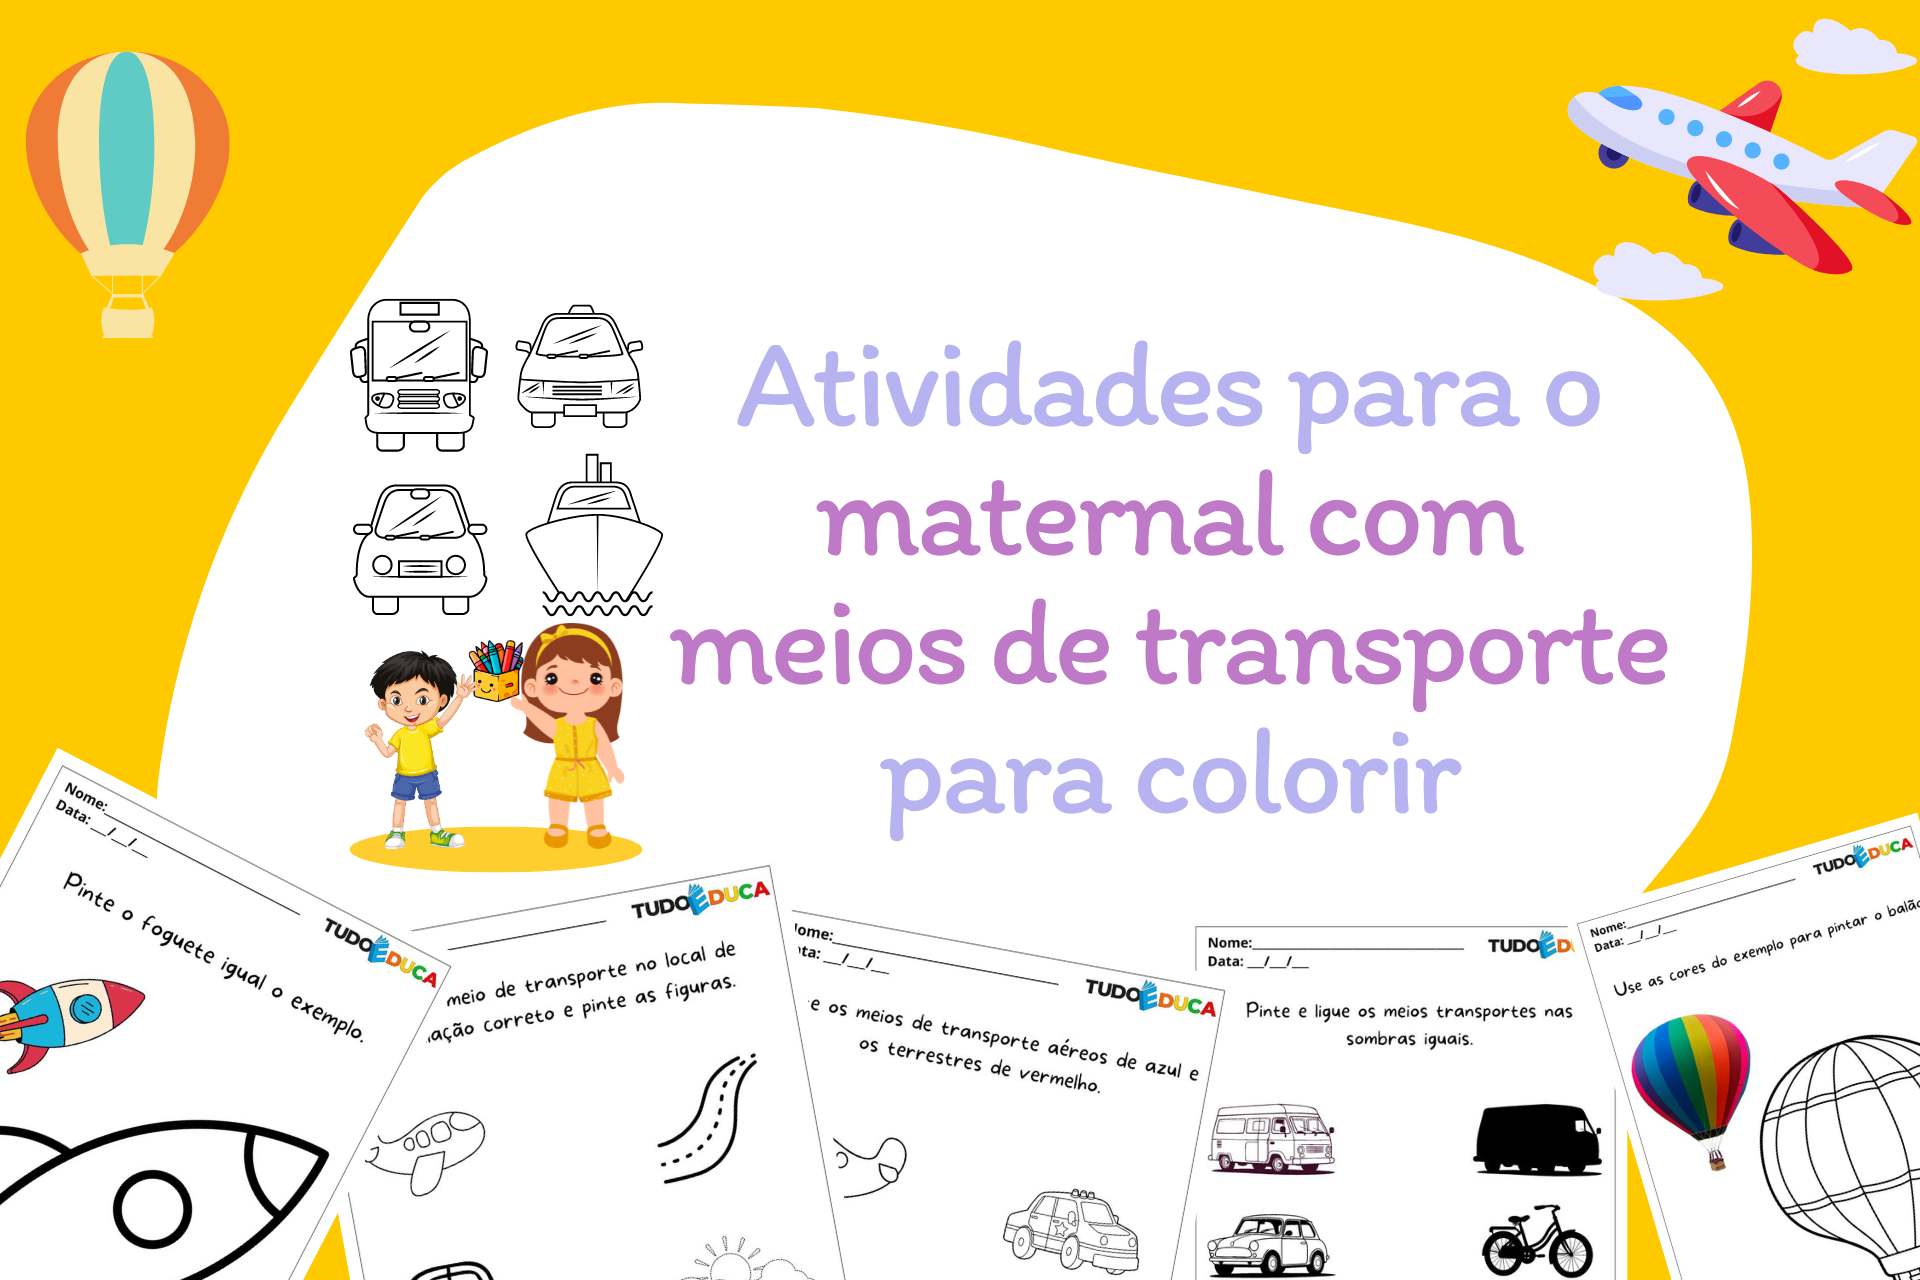 Atividades para o maternal com meios de transporte para colorir